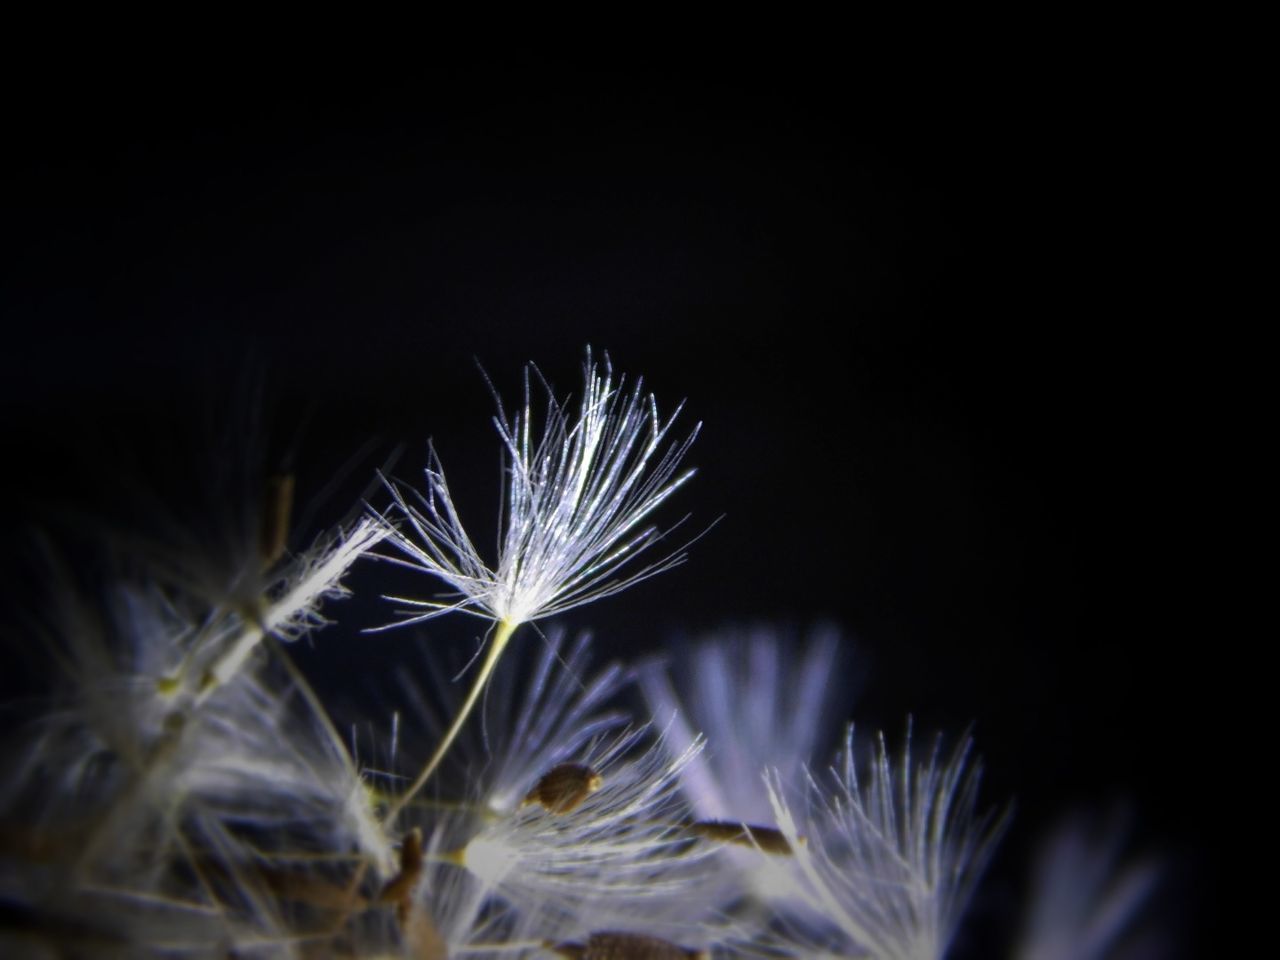 Close-up of dandelion seeds against black background